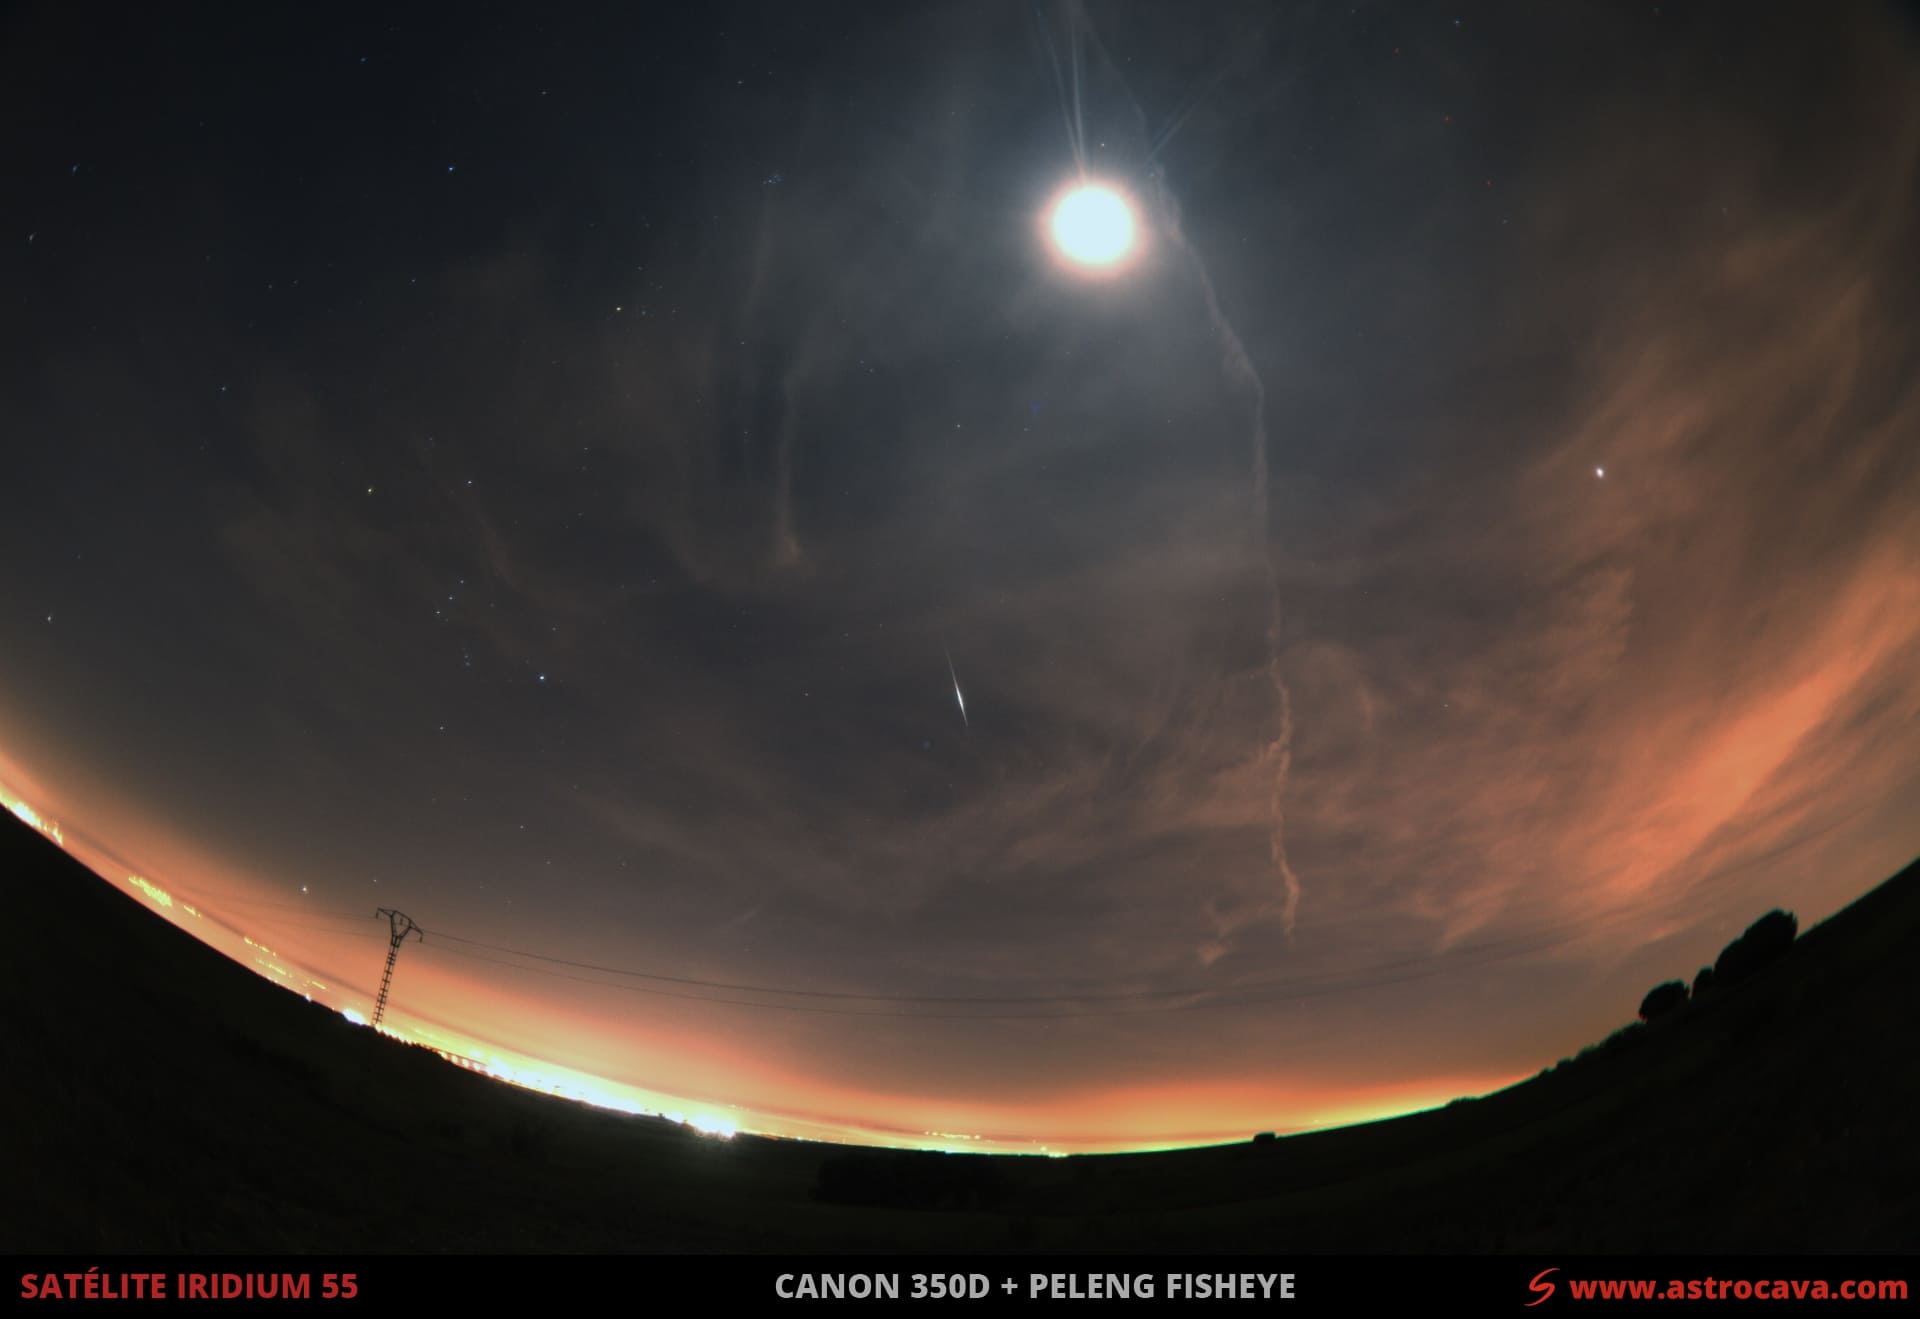 Destello satélite Iridium 55  (acabó perdiendo su órbita en 2019). La constelación de Orión claramente visible a la izquierda de la imagen en una noche de plena luna llena.